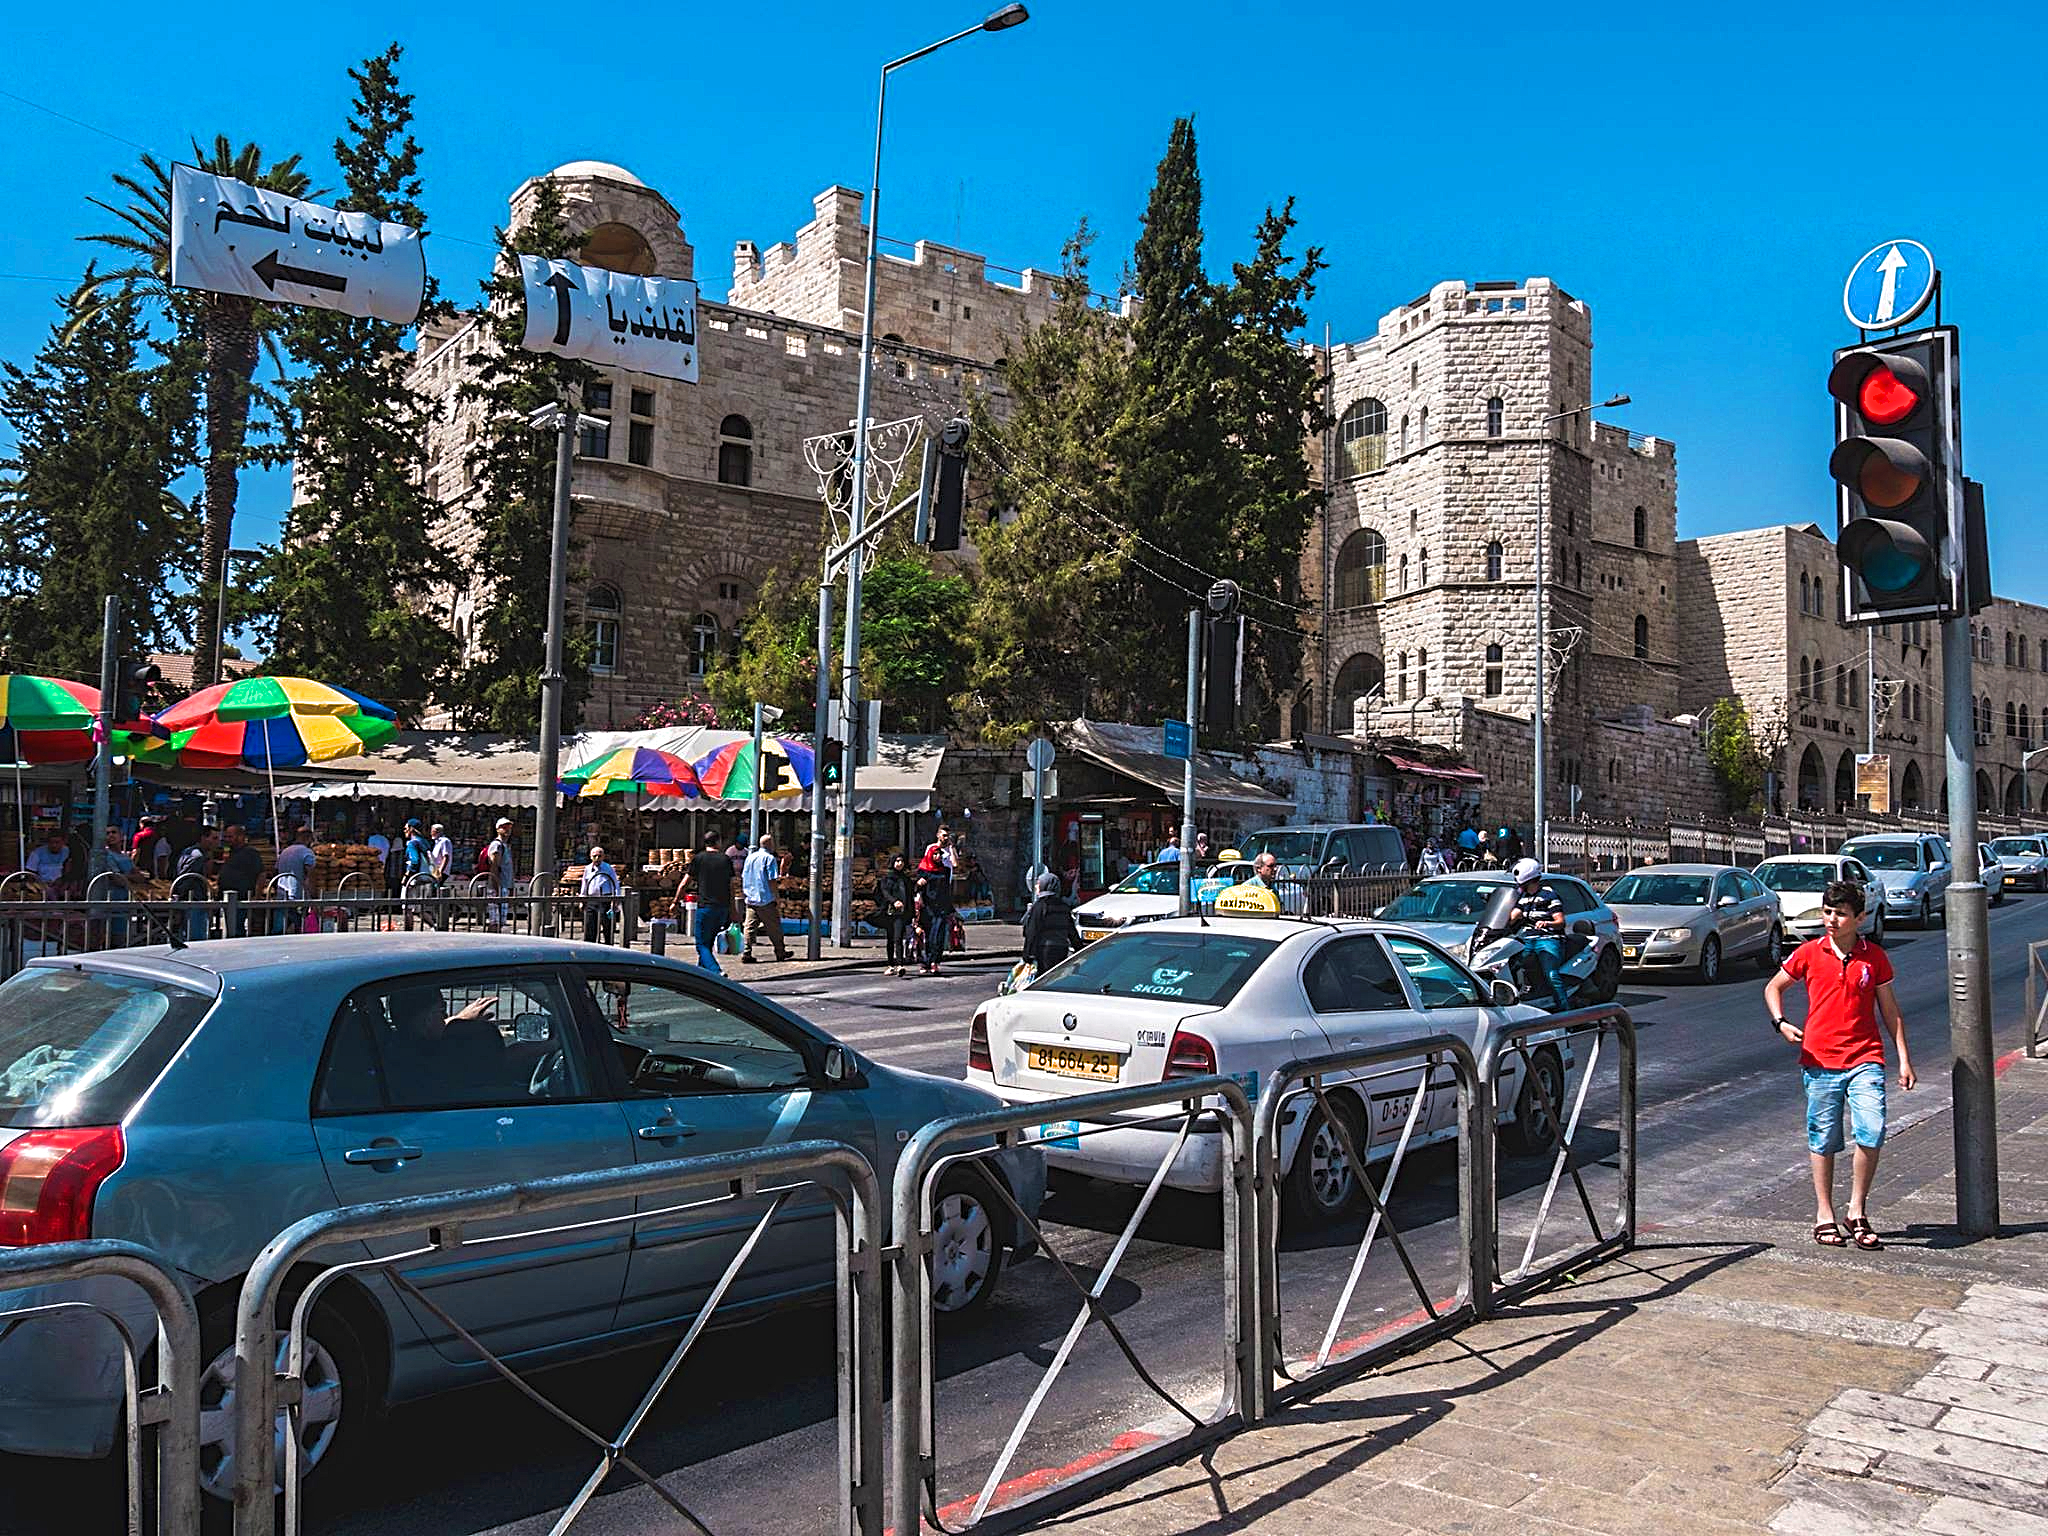 A taxi in Jerusalem